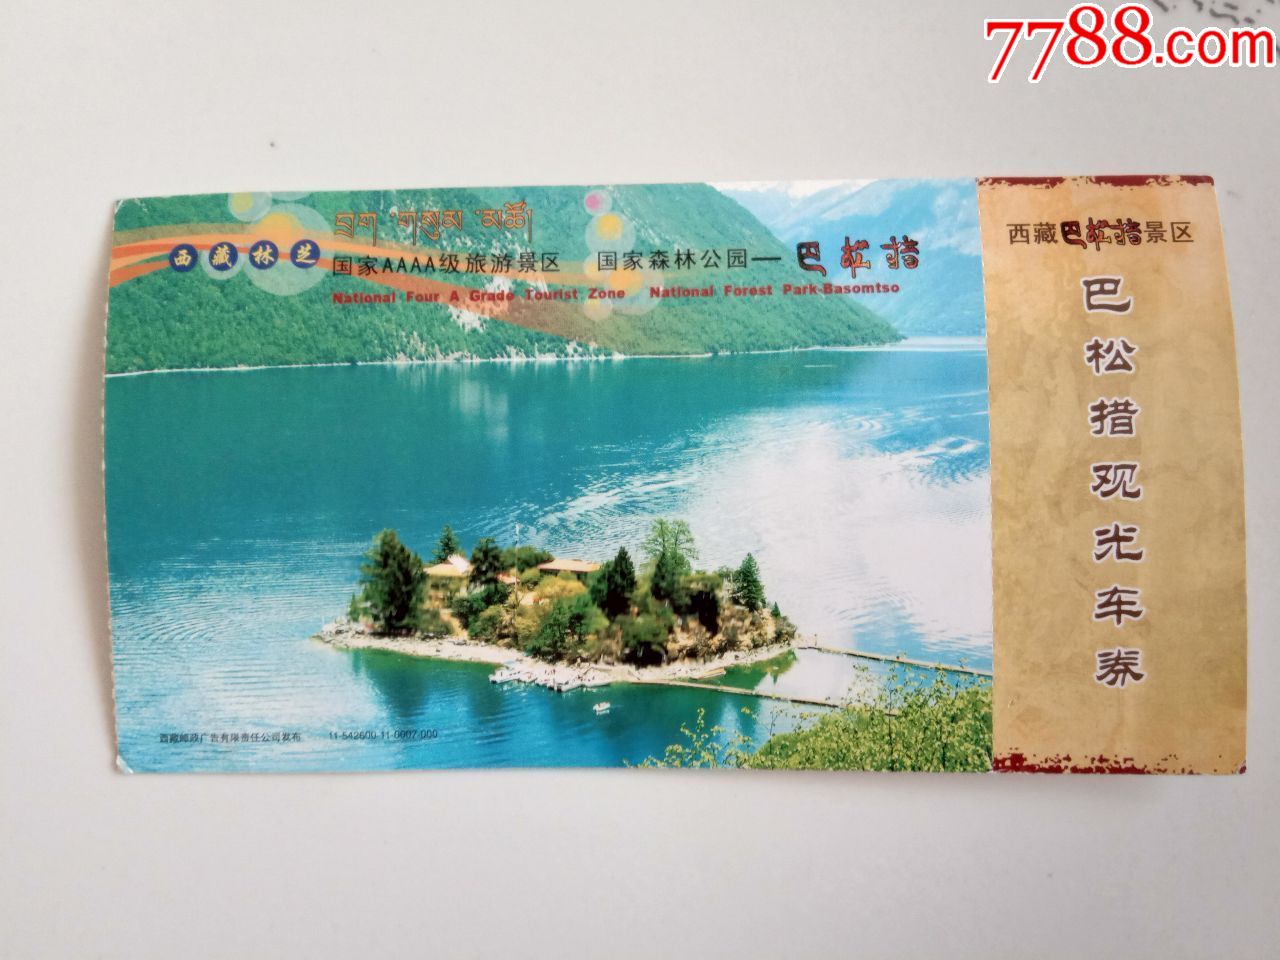 西藏巴松措景区邮资门票